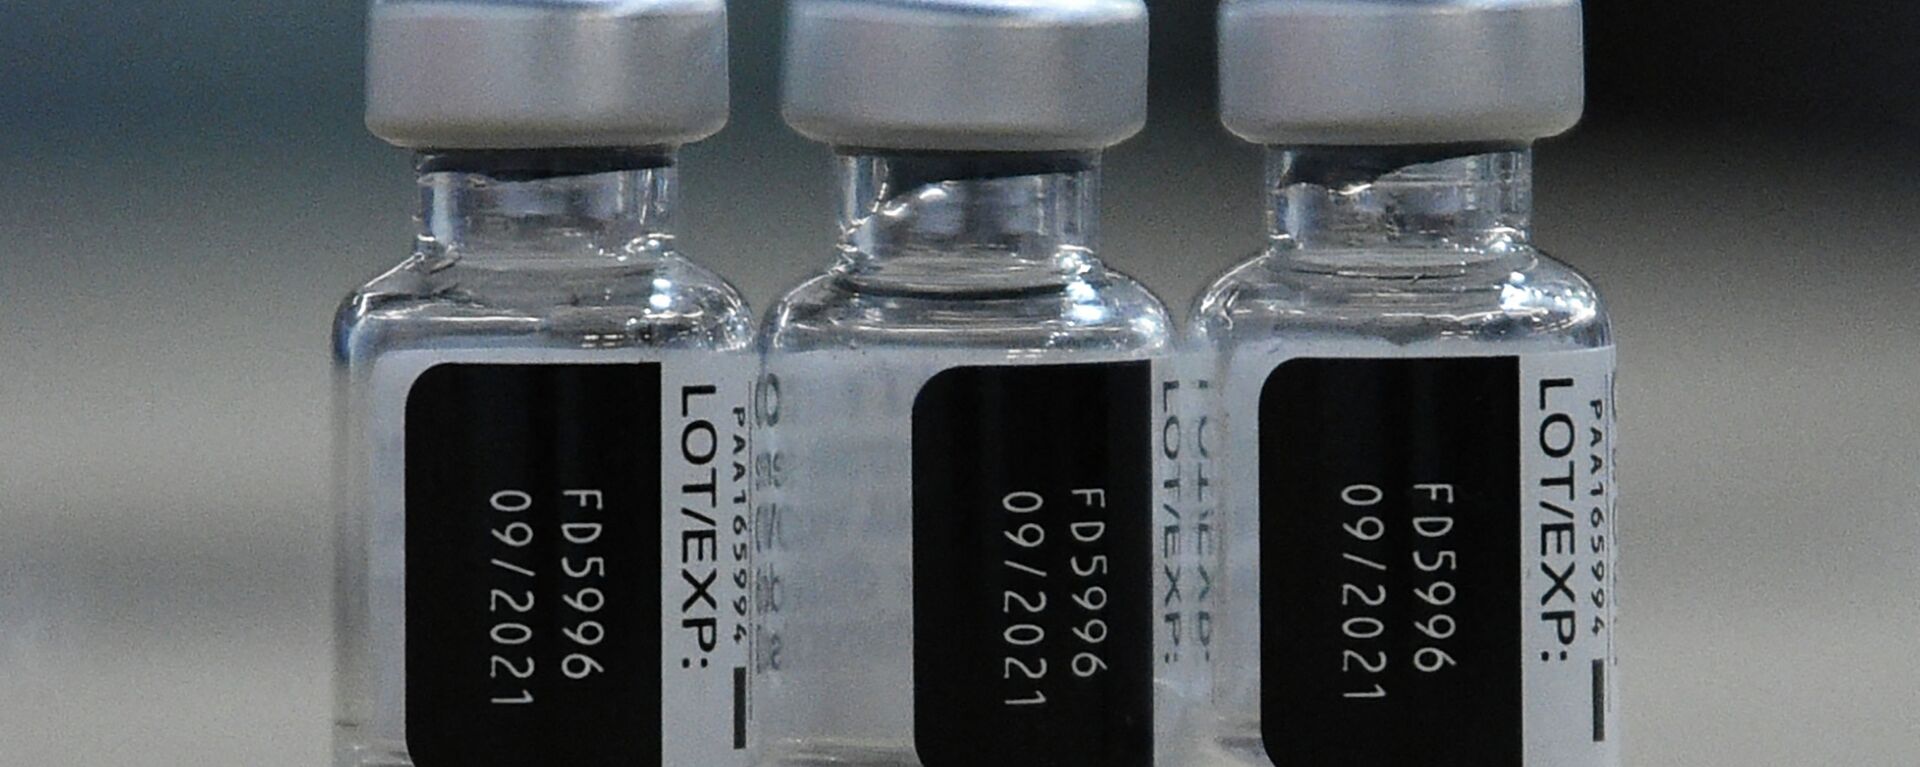 Использованные флаконы вакцины BioNtech Pfizer Covid-19, архивное фото - Sputnik Қазақстан, 1920, 07.04.2022